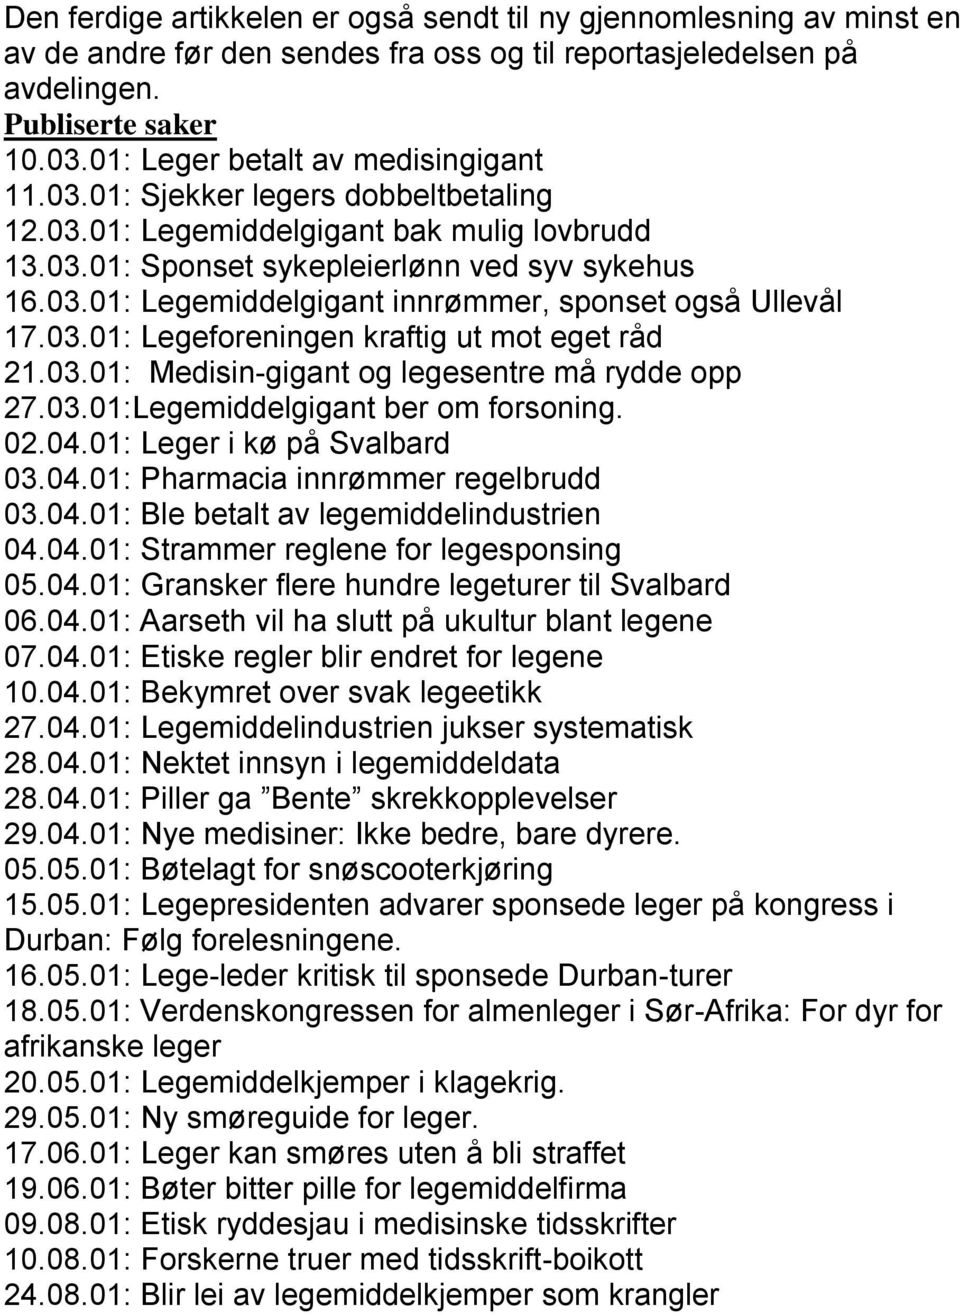 03.01: Legeforeningen kraftig ut mot eget råd 21.03.01: Medisin-gigant og legesentre må rydde opp 27.03.01:Legemiddelgigant ber om forsoning. 02.04.01: Leger i kø på Svalbard 03.04.01: Pharmacia innrømmer regelbrudd 03.